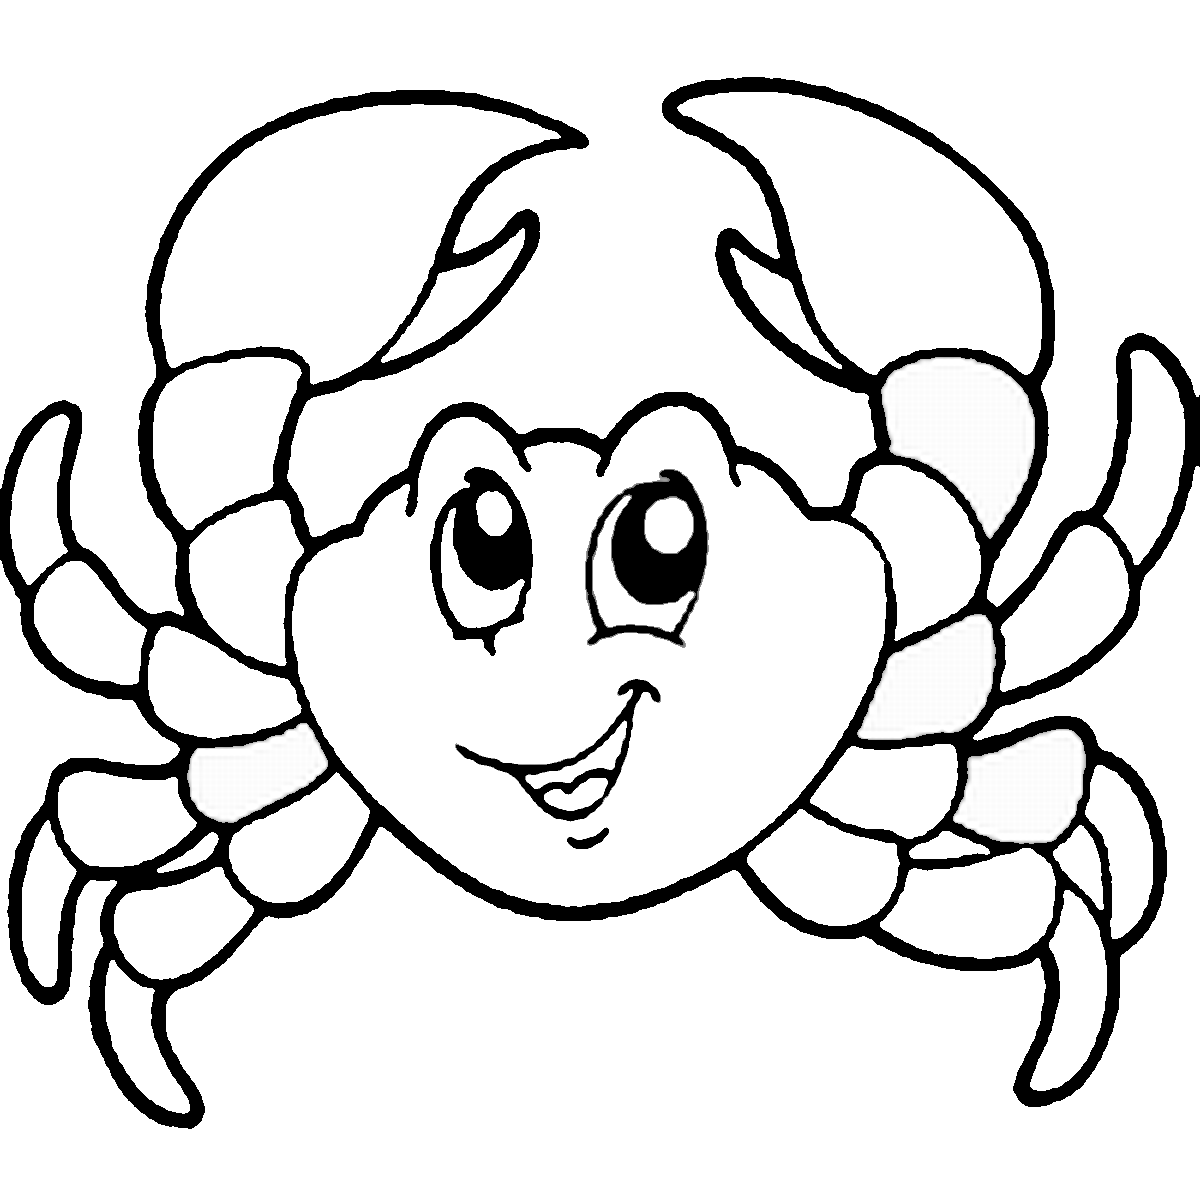 Crab coloring #6, Download drawings